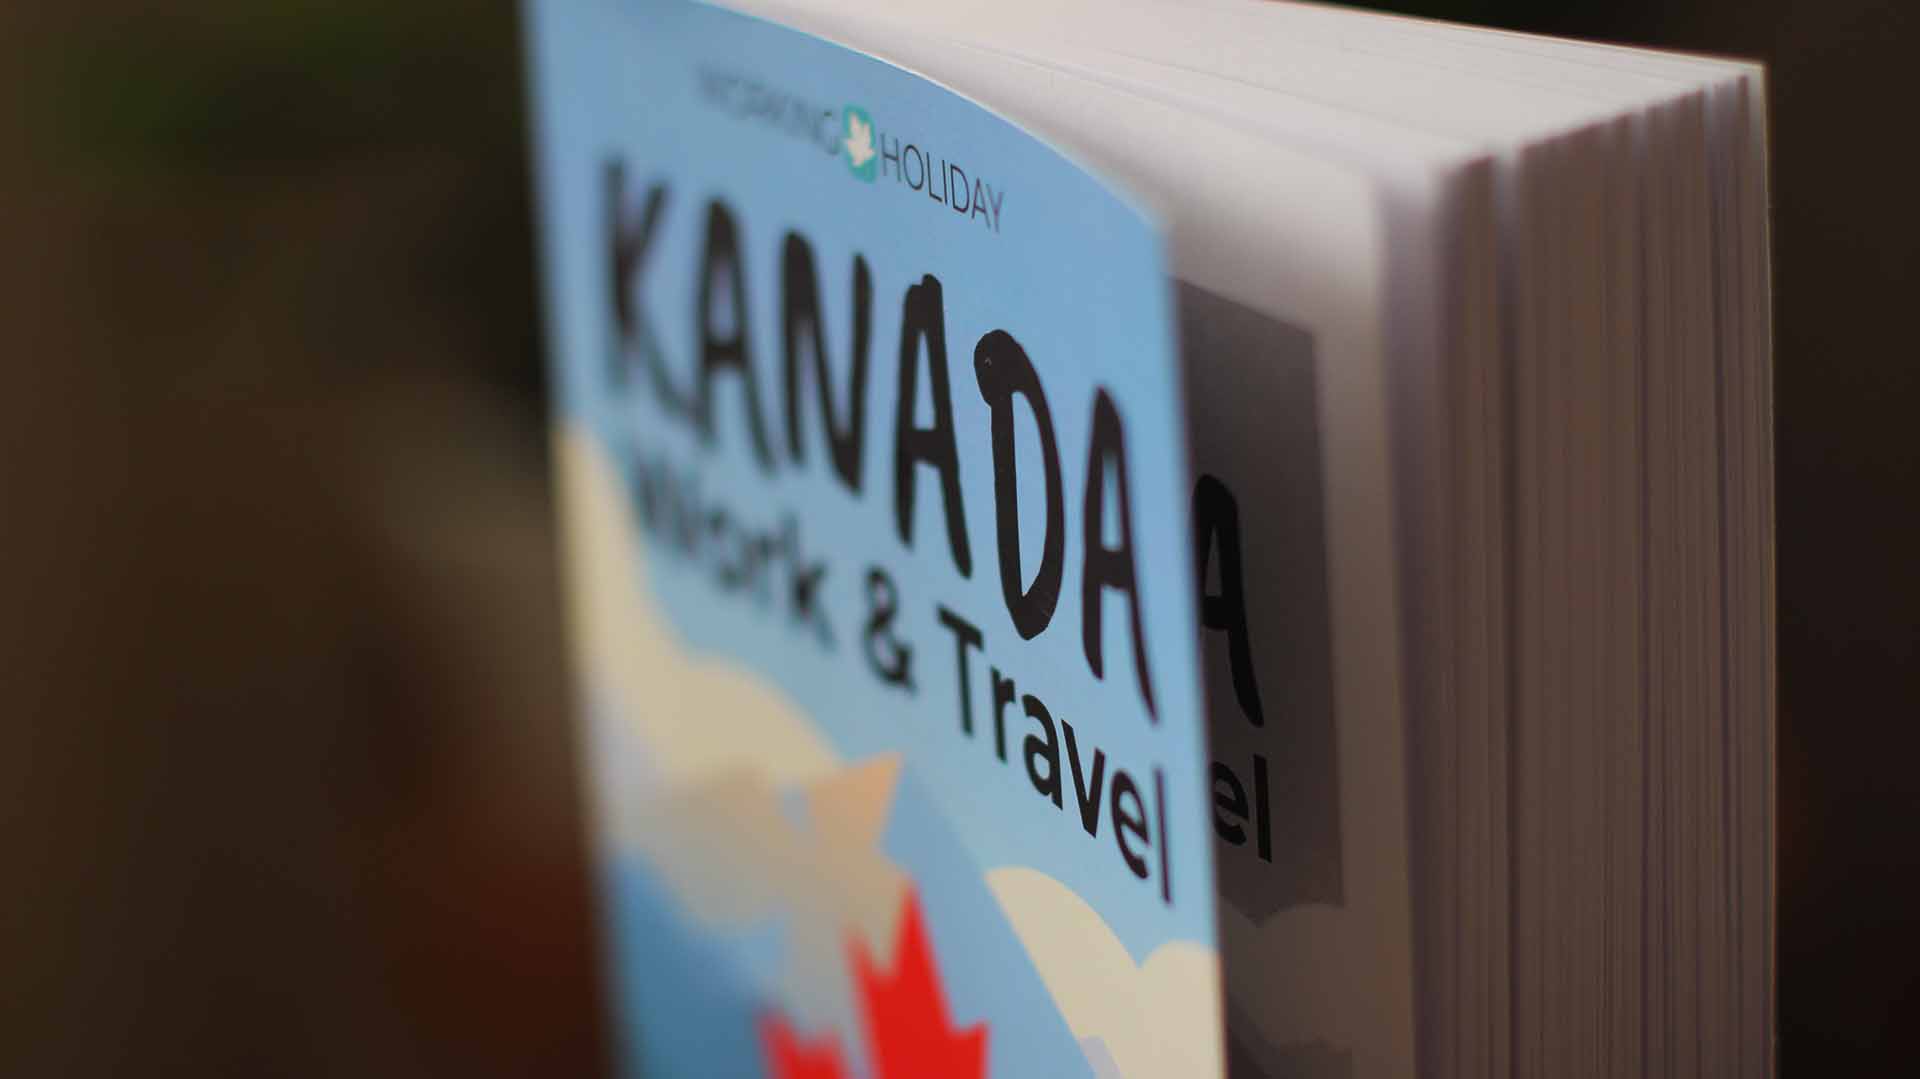 Work and Travel Kanada Ratgeber - Daniel Kovacs - Gedruckte Ausgabe Bild 02